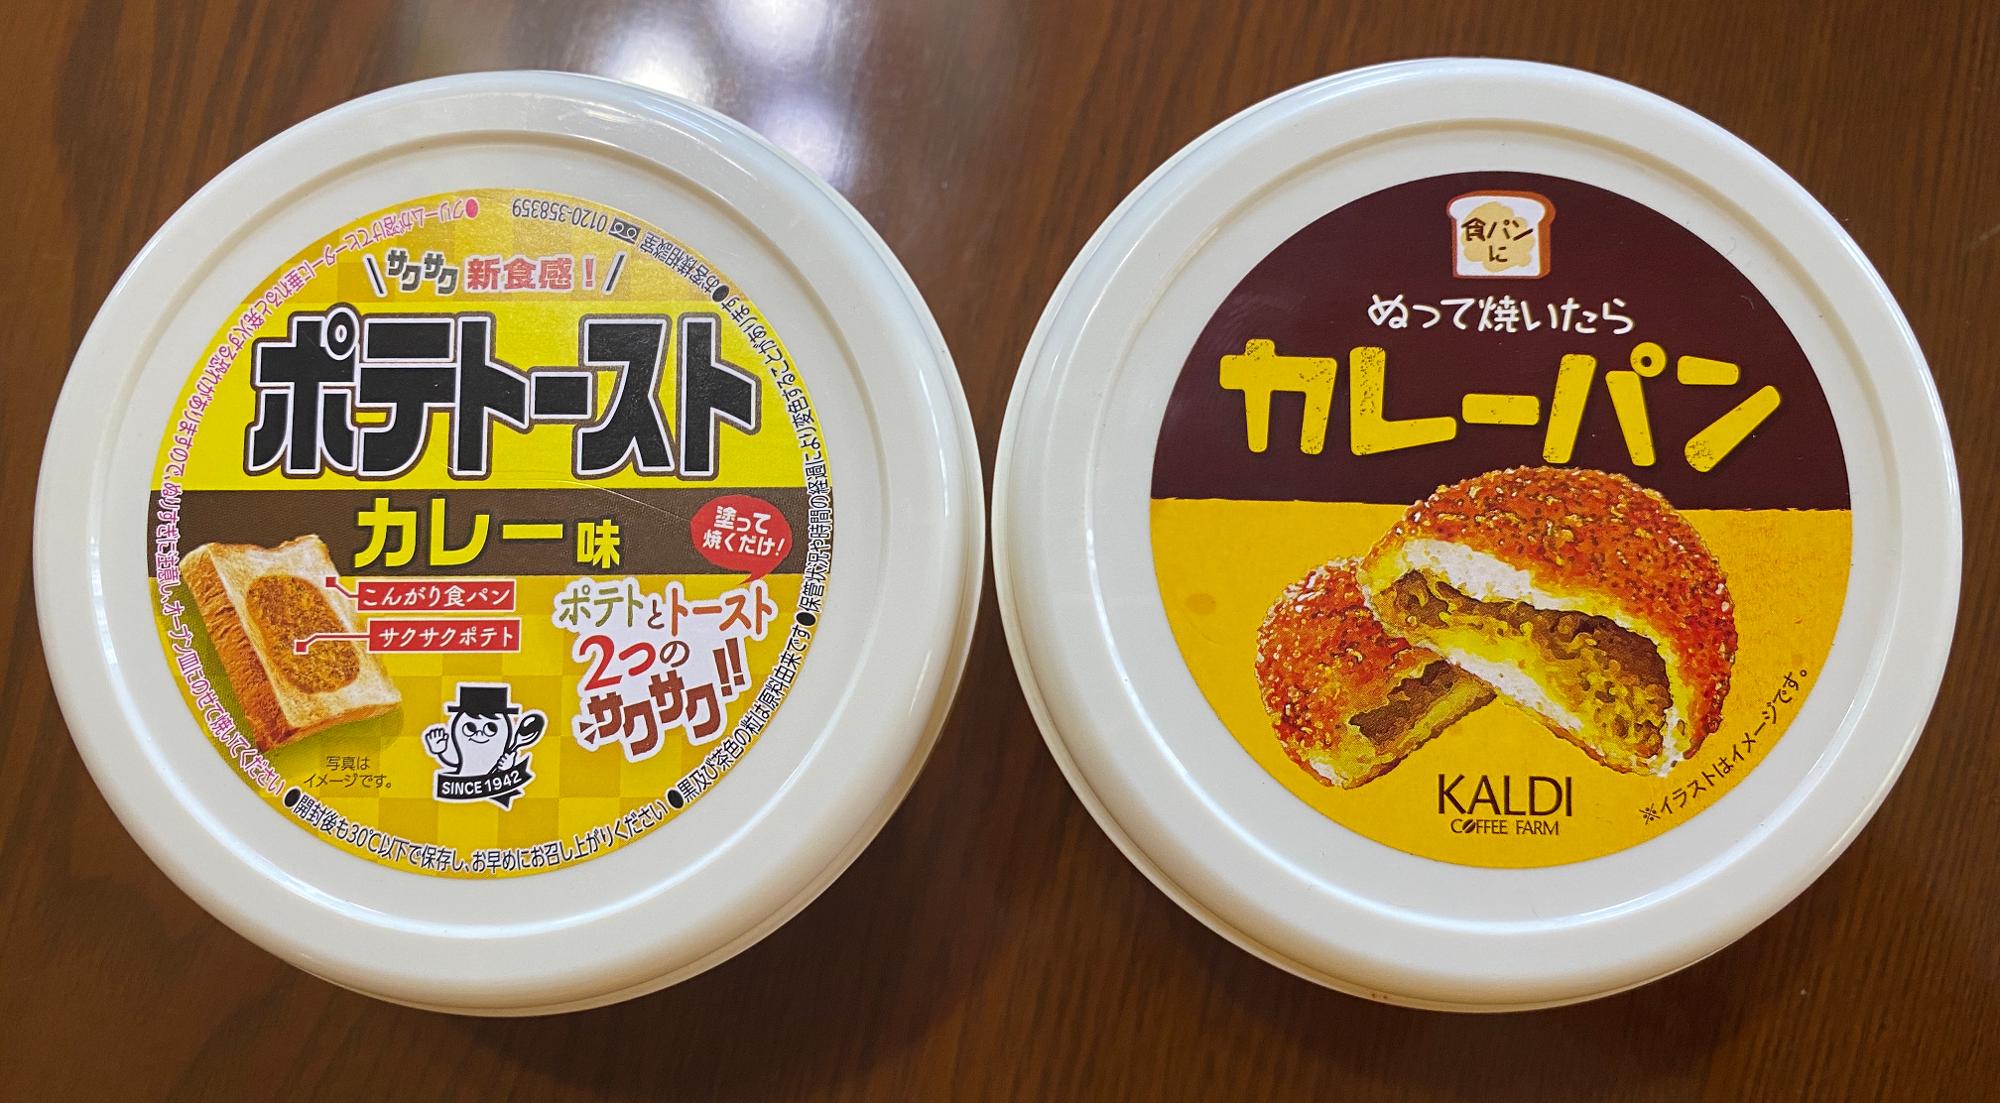 人気のカレーパントースト ソントン カルディ を食べ比べ わっき Yahoo Japan クリエイターズプログラム